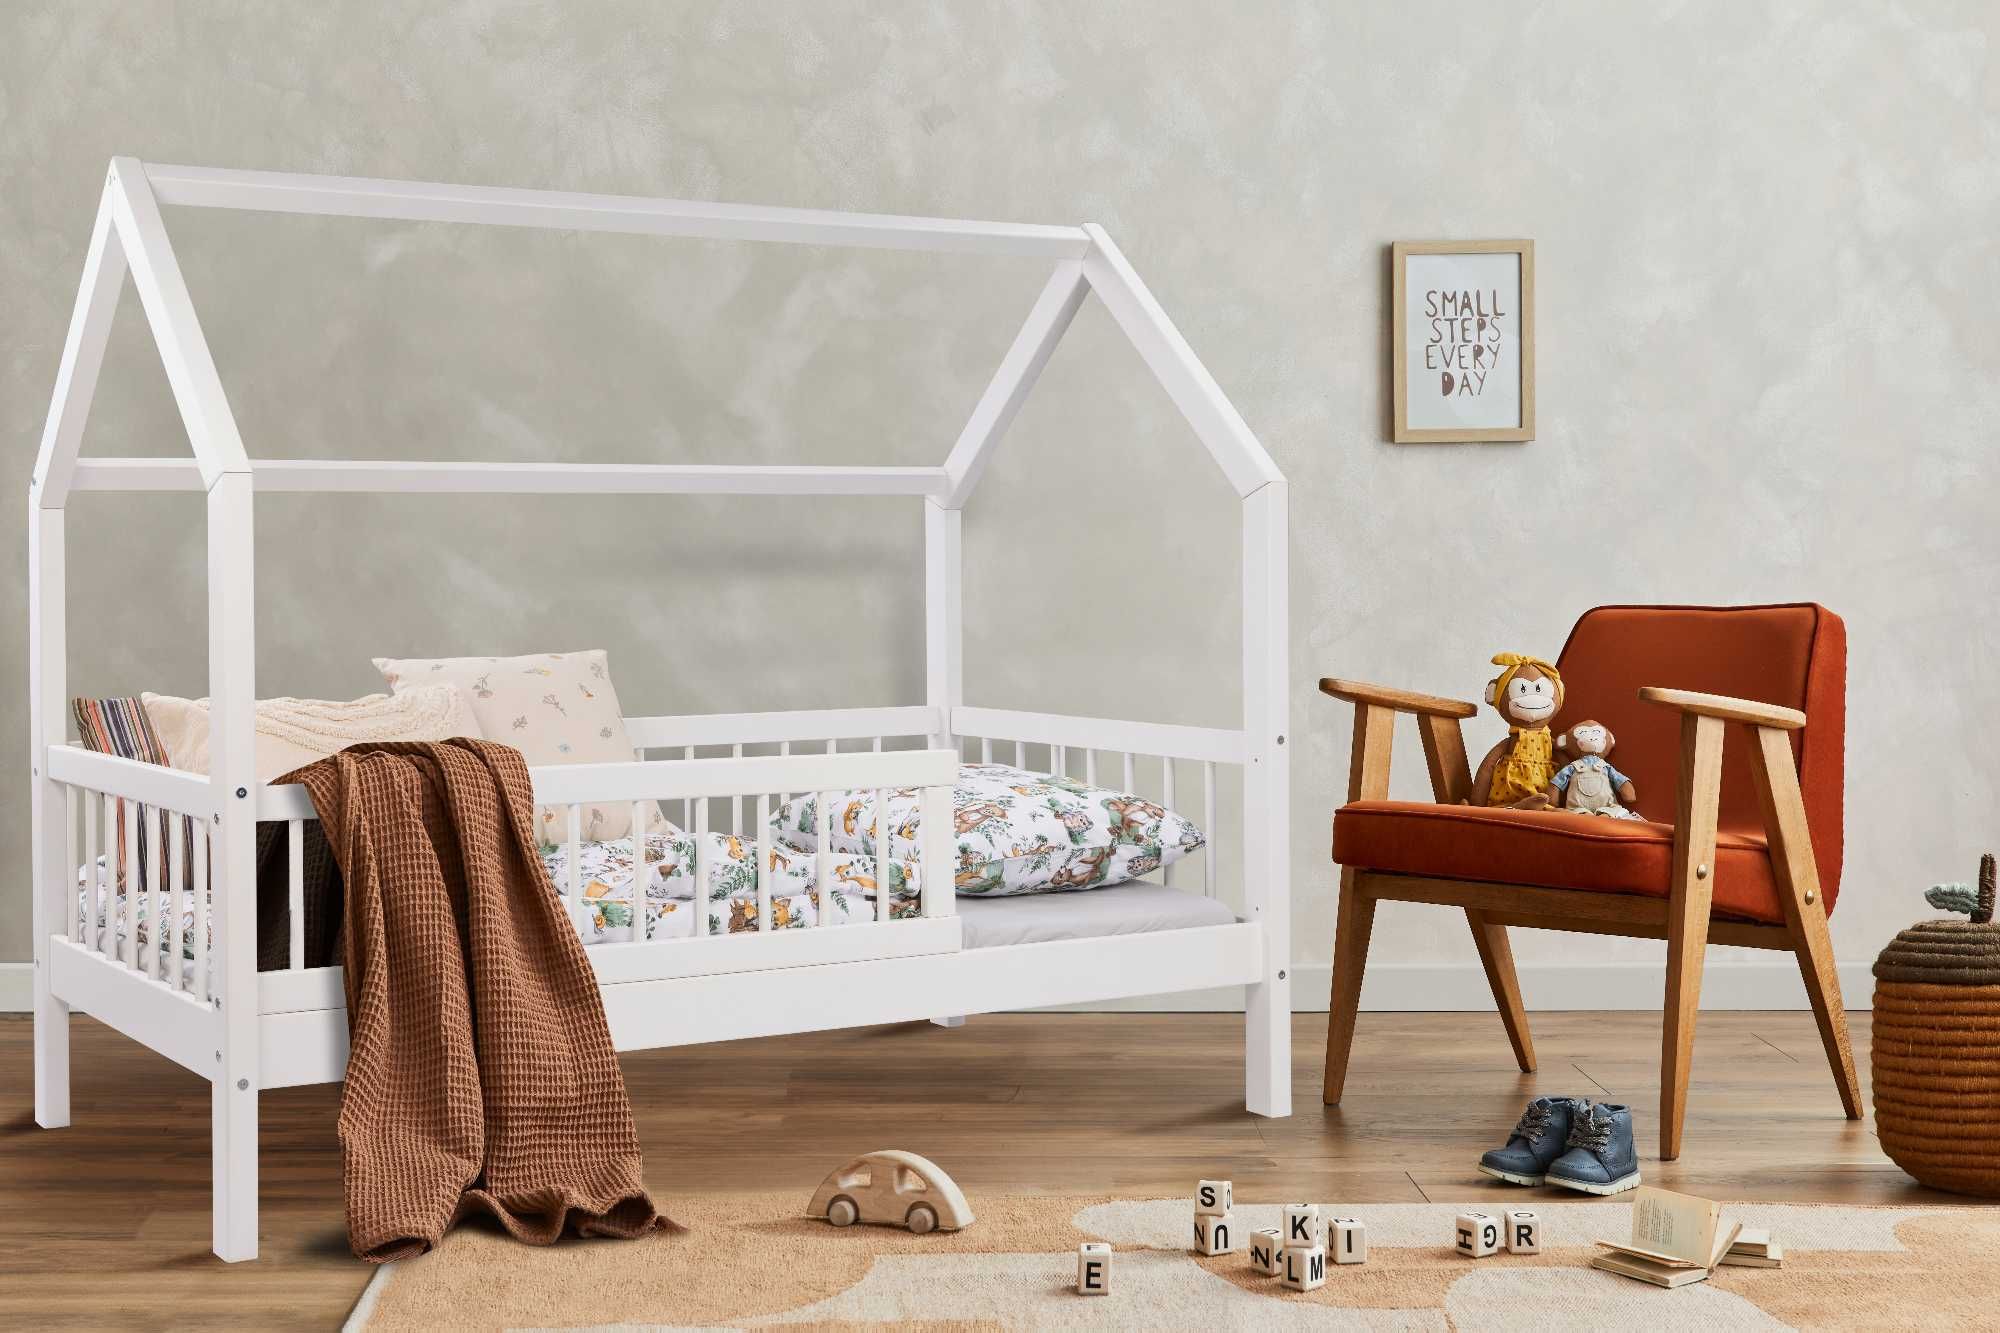 Łóżko dziecięce domek drewniane, styl skandynawski, białe lub szare